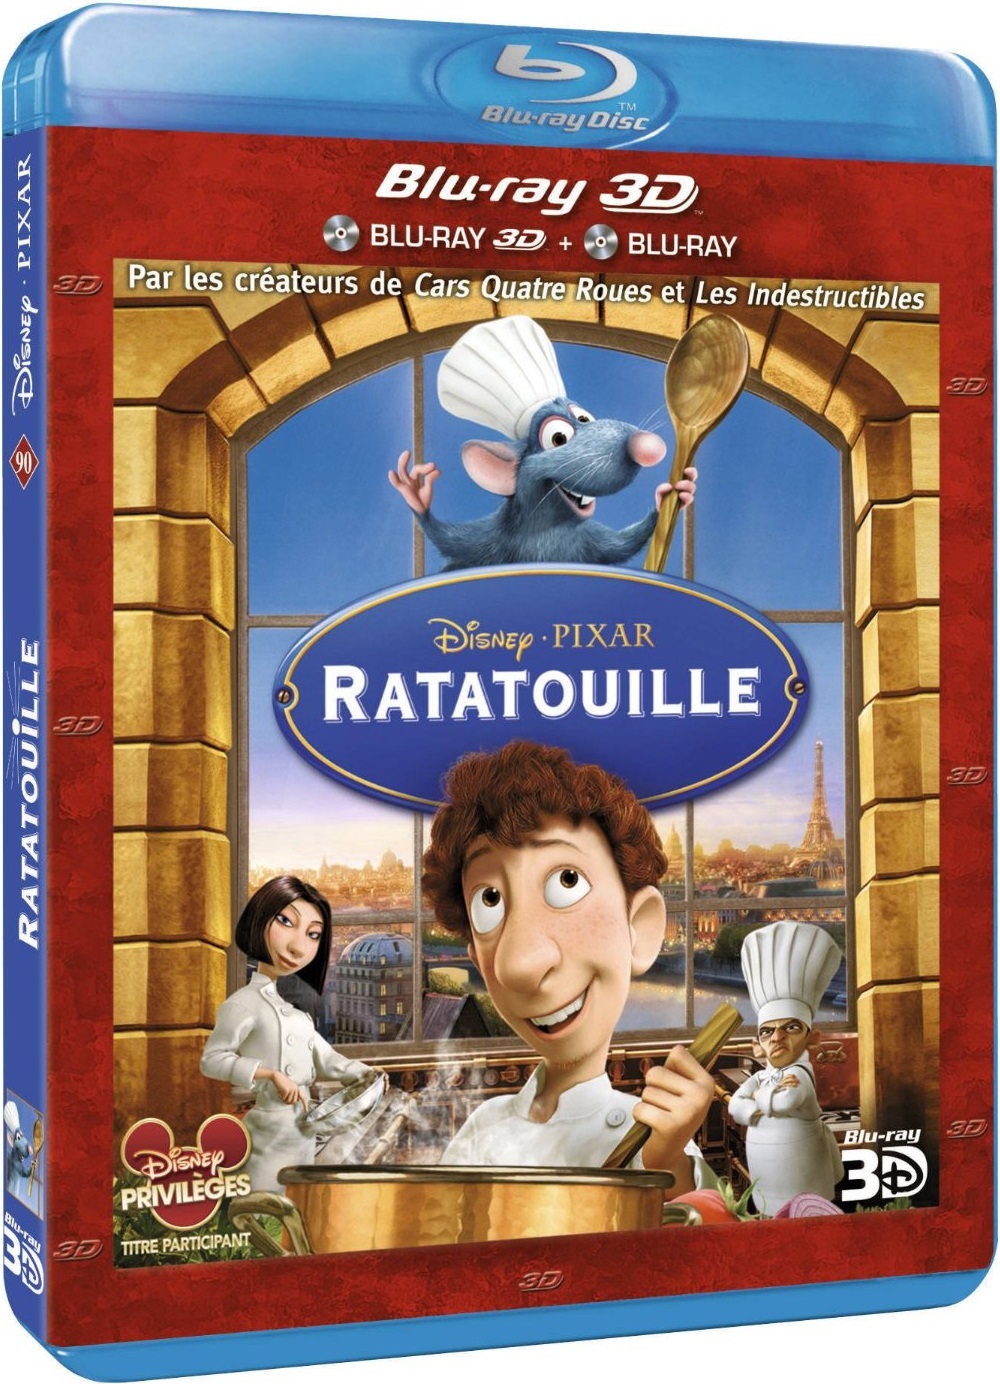 Blu-ray 3D] Ratatouille - Le cinéma du loup